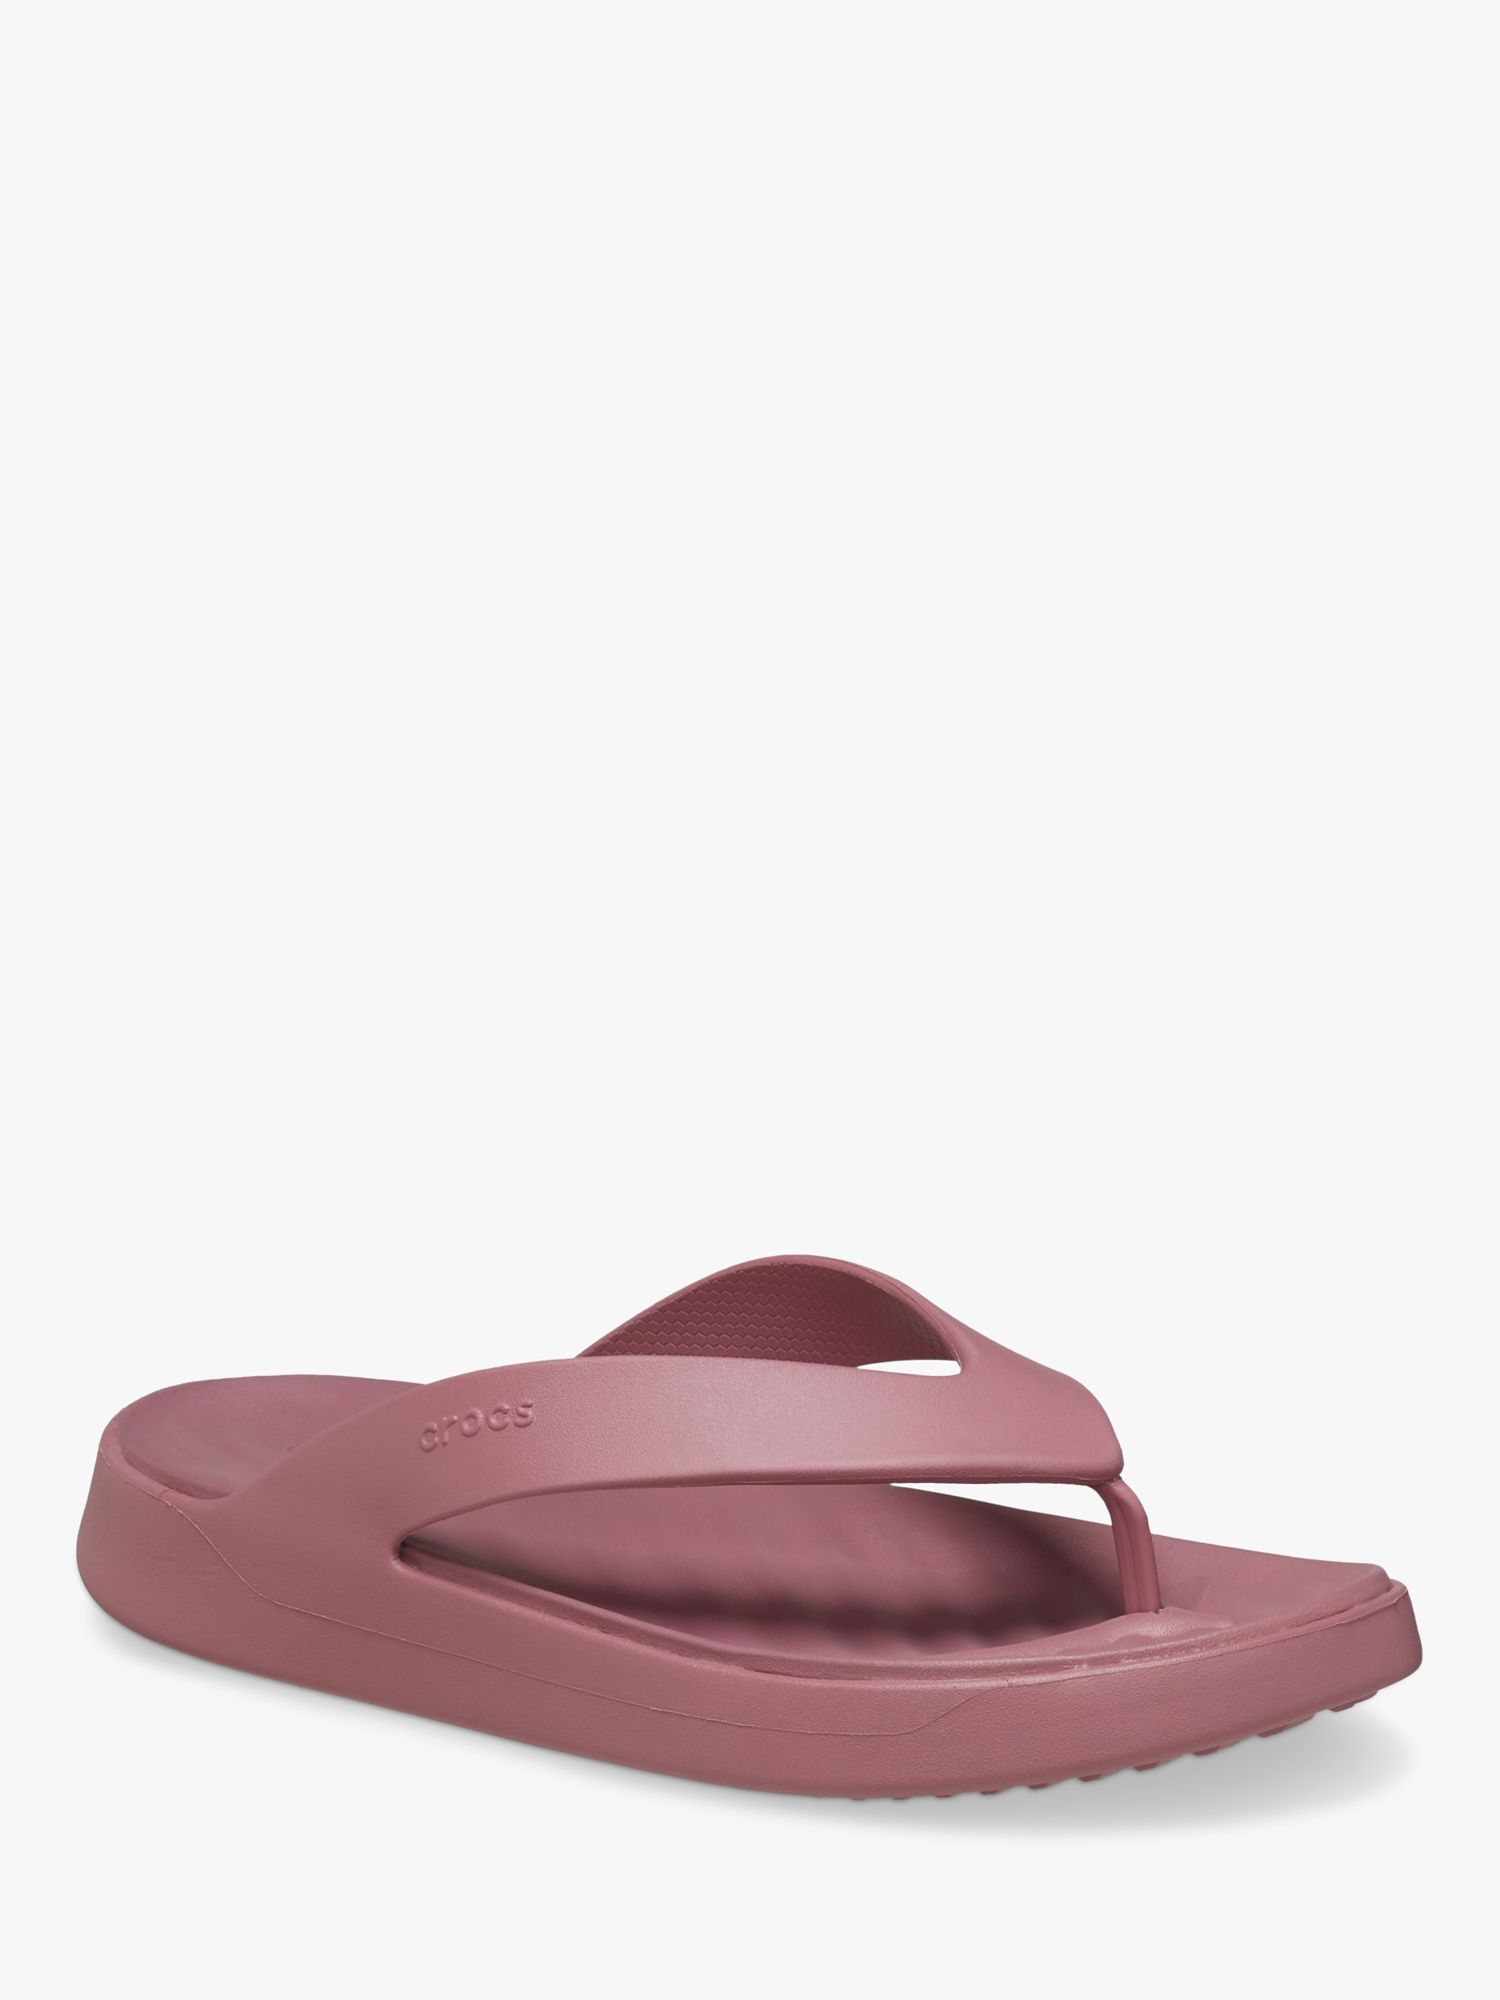 Crocs Getaway Flip-Flops, Dark Pink, 4